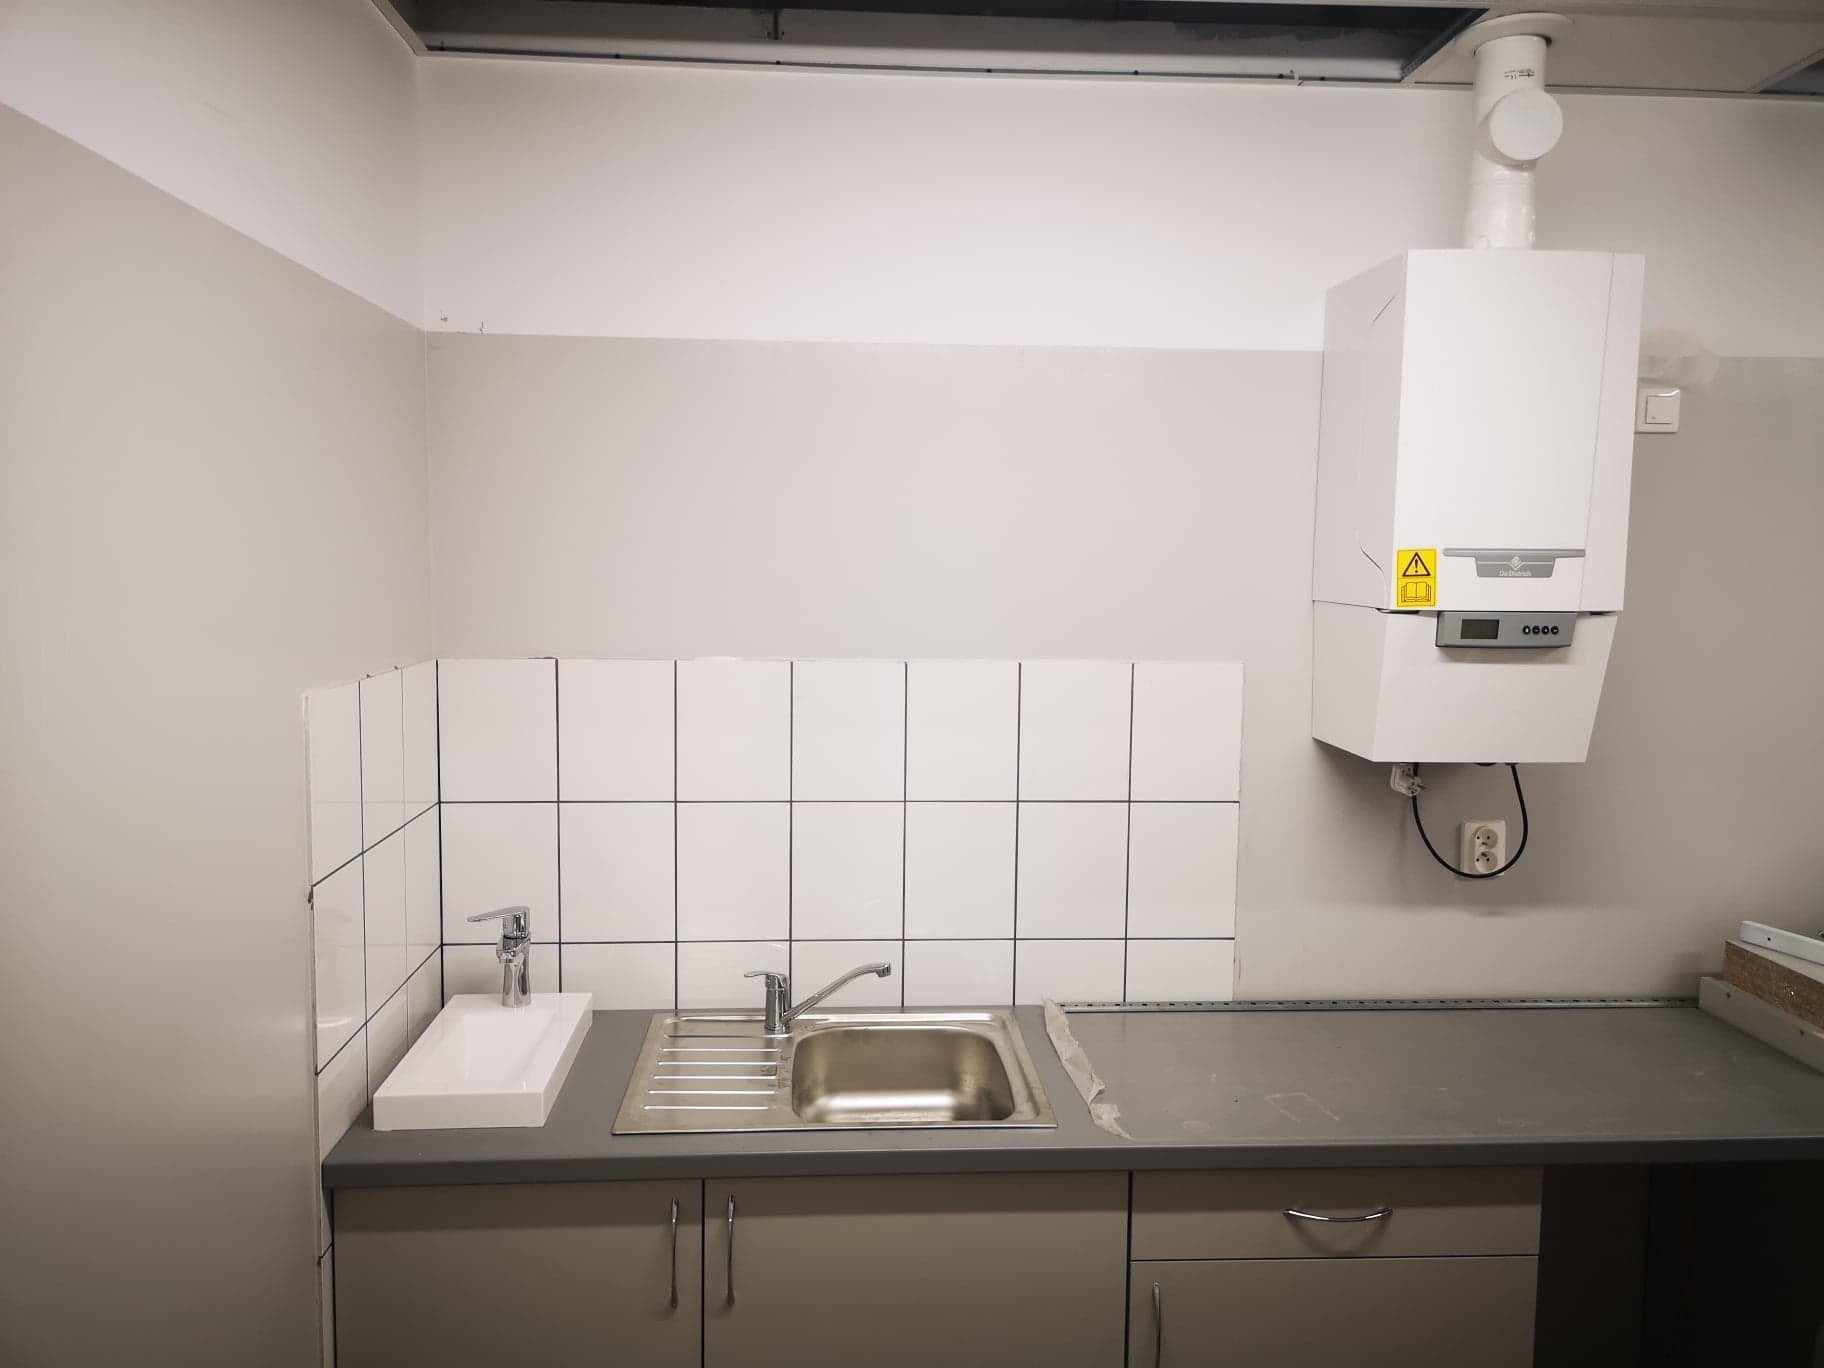 zdjęcia montaż zapleczy sanitarnych w sieci Rossmann